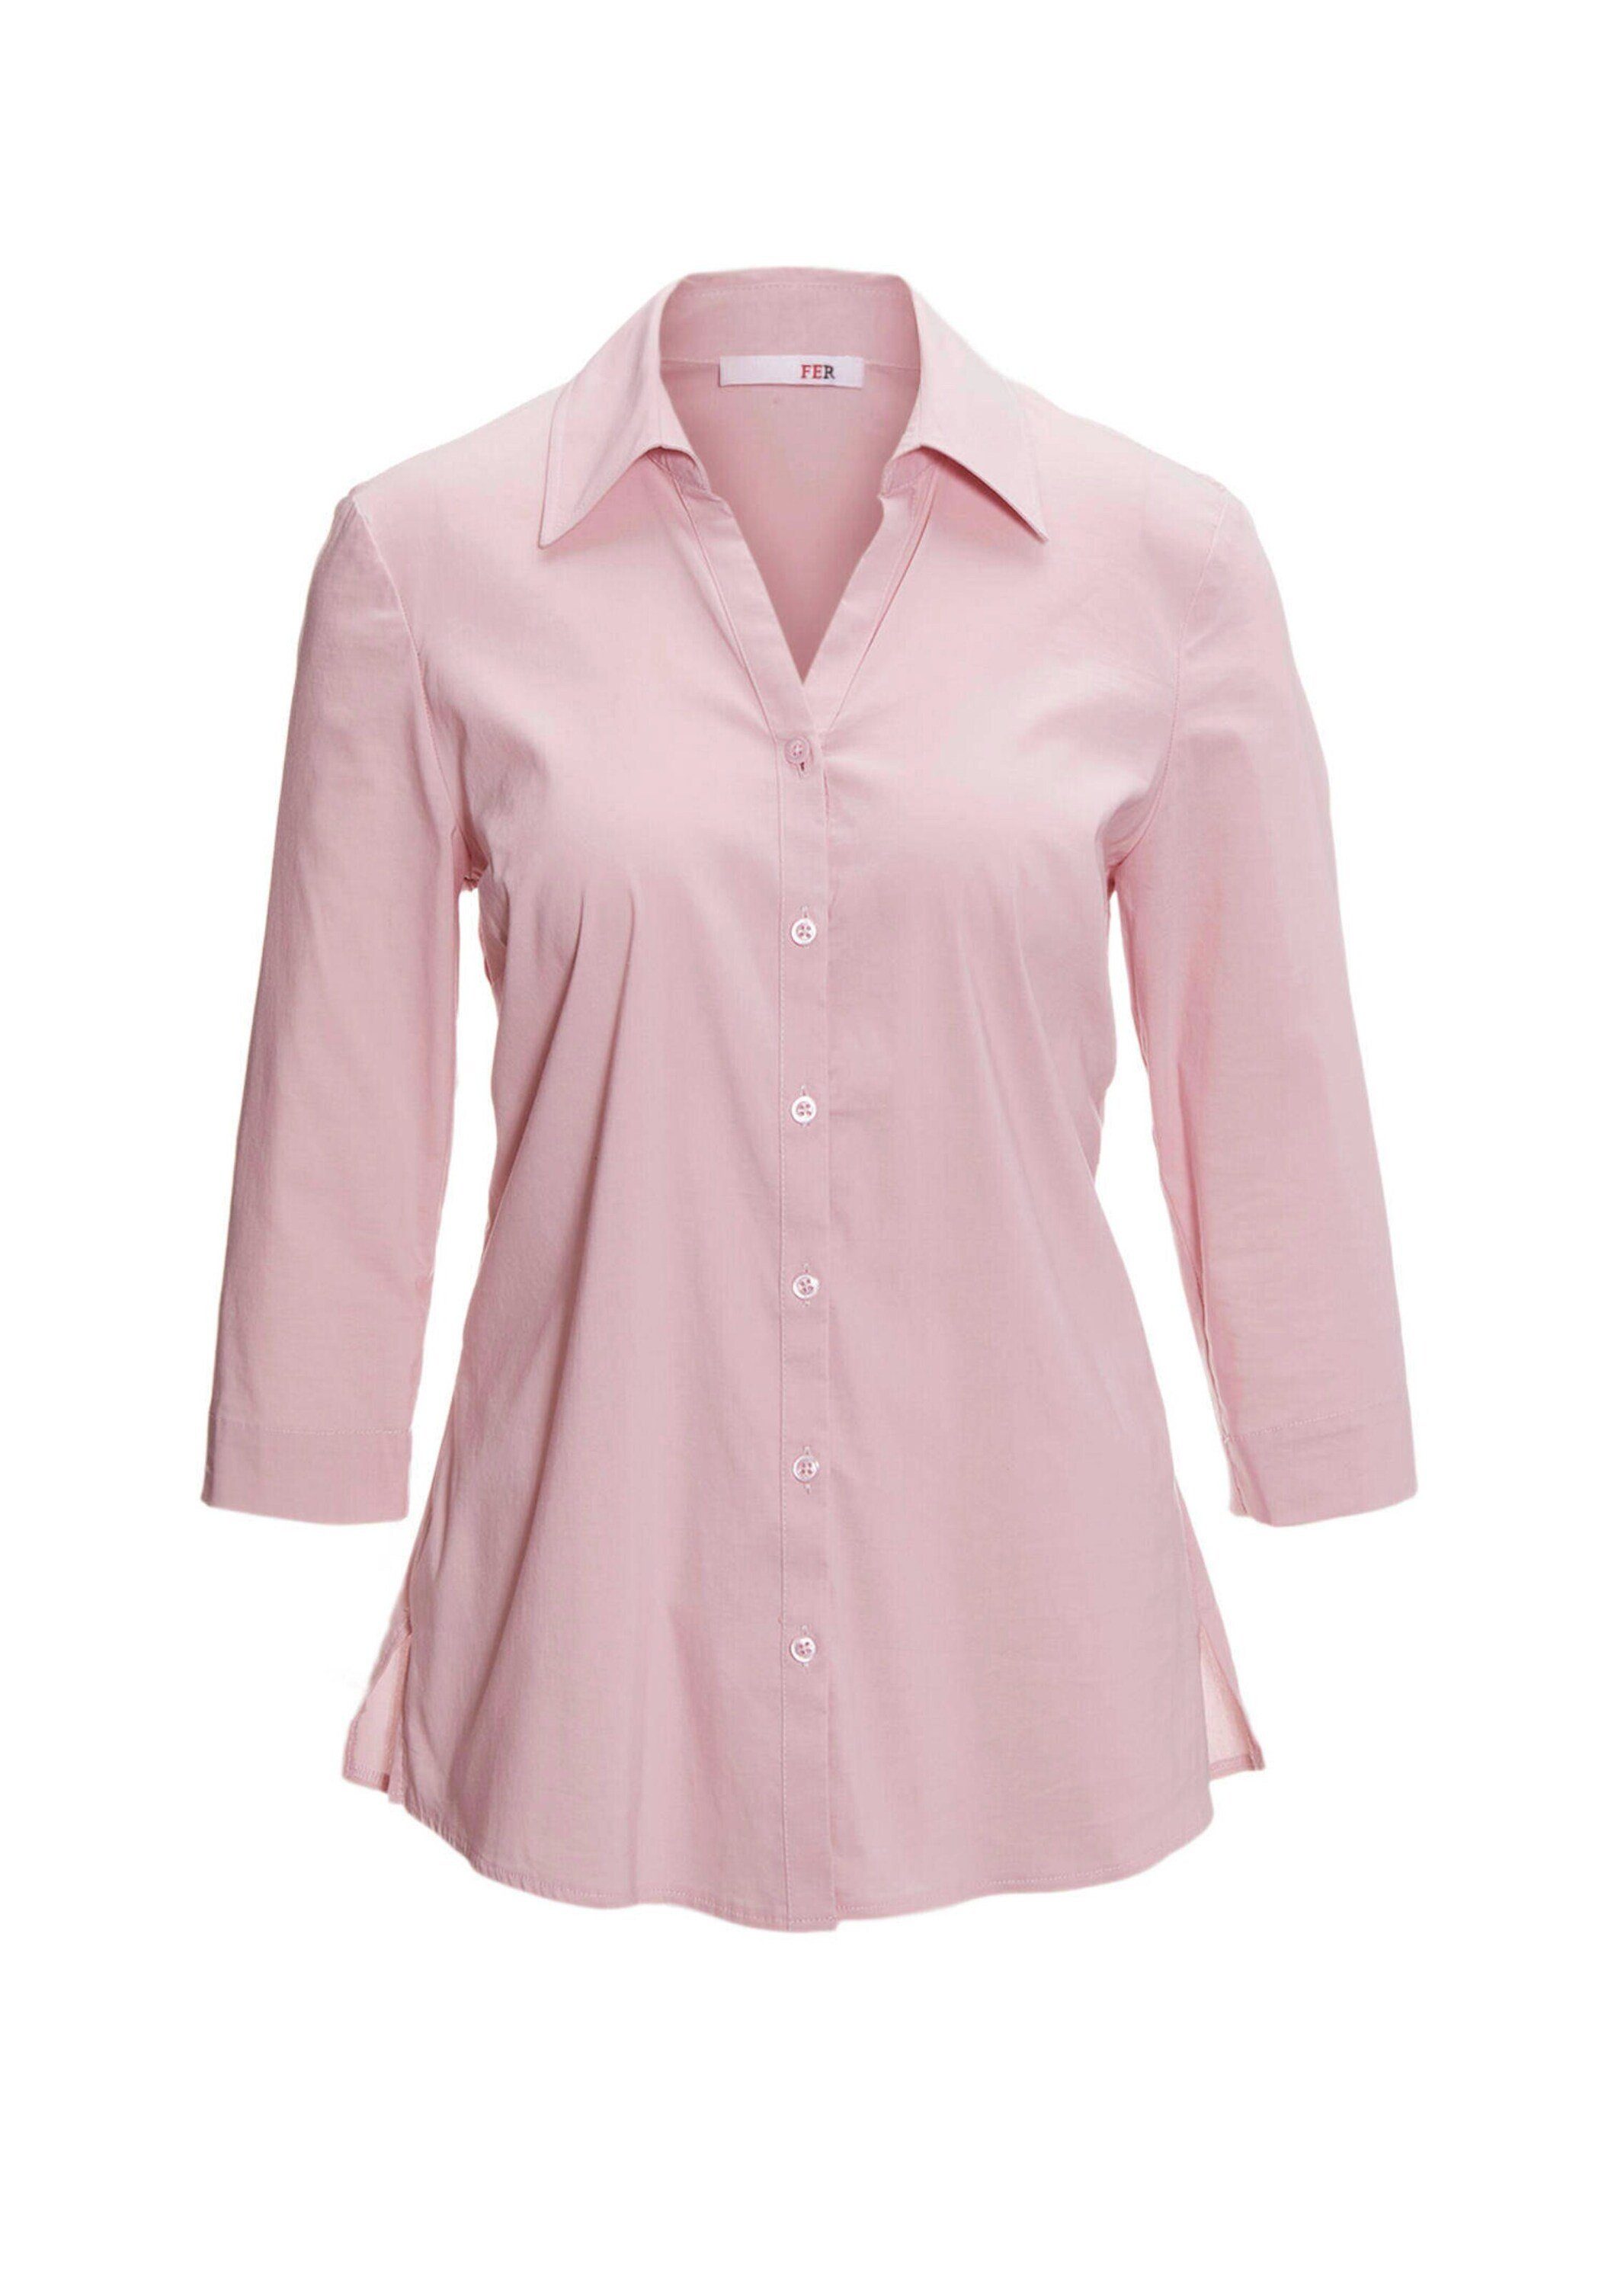 GOLDNER Hemdbluse Kurzgröße: rosé Bluse Stretchbequeme Baumwolle mit